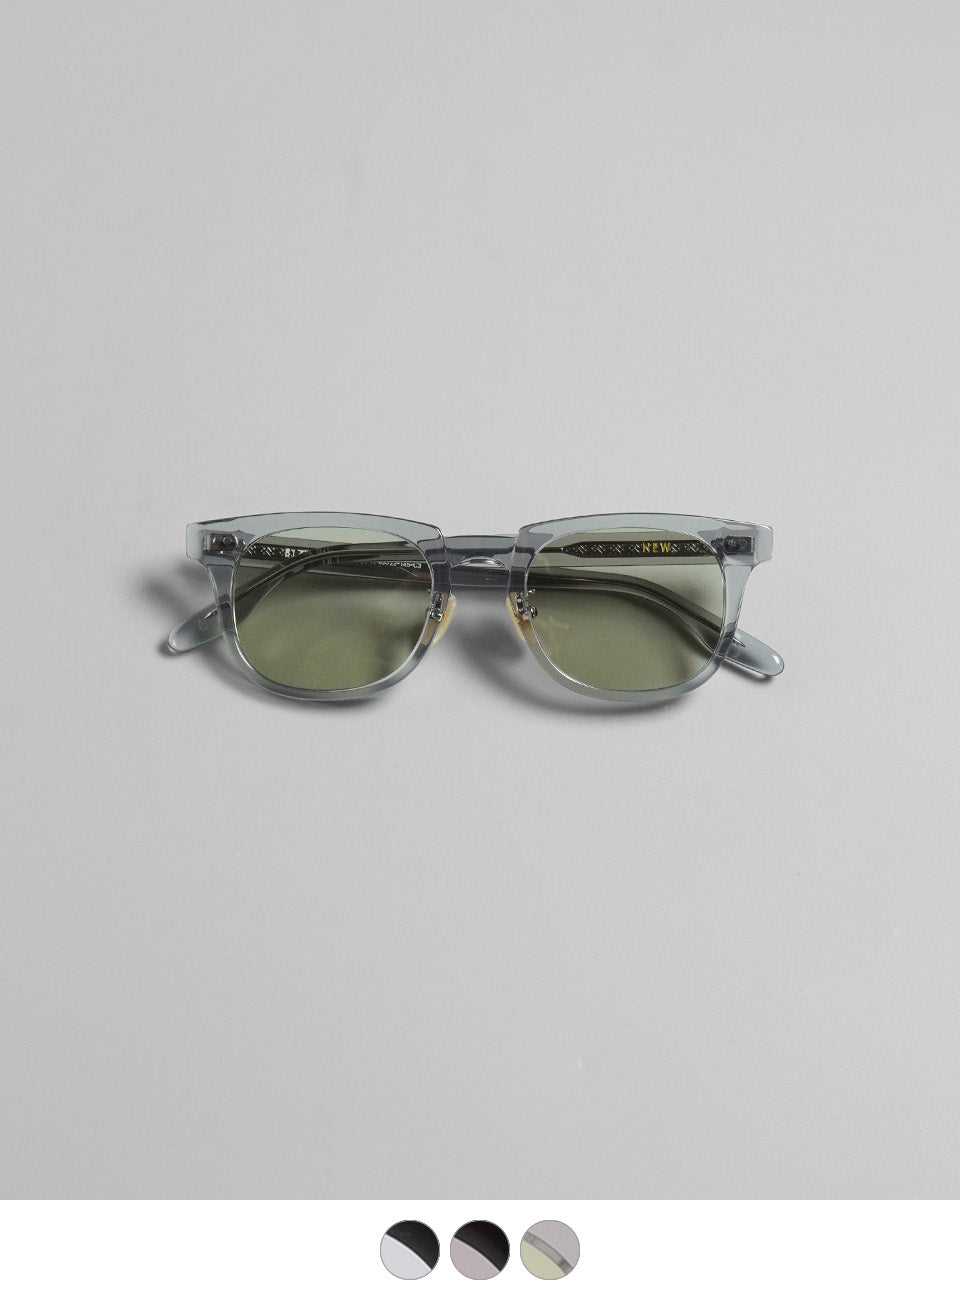 NEW. ニュー ビザール BIZARRE ブロー型 サングラス 眼鏡 めがね 伊達メガネ カラーレンズ  【送料無料】